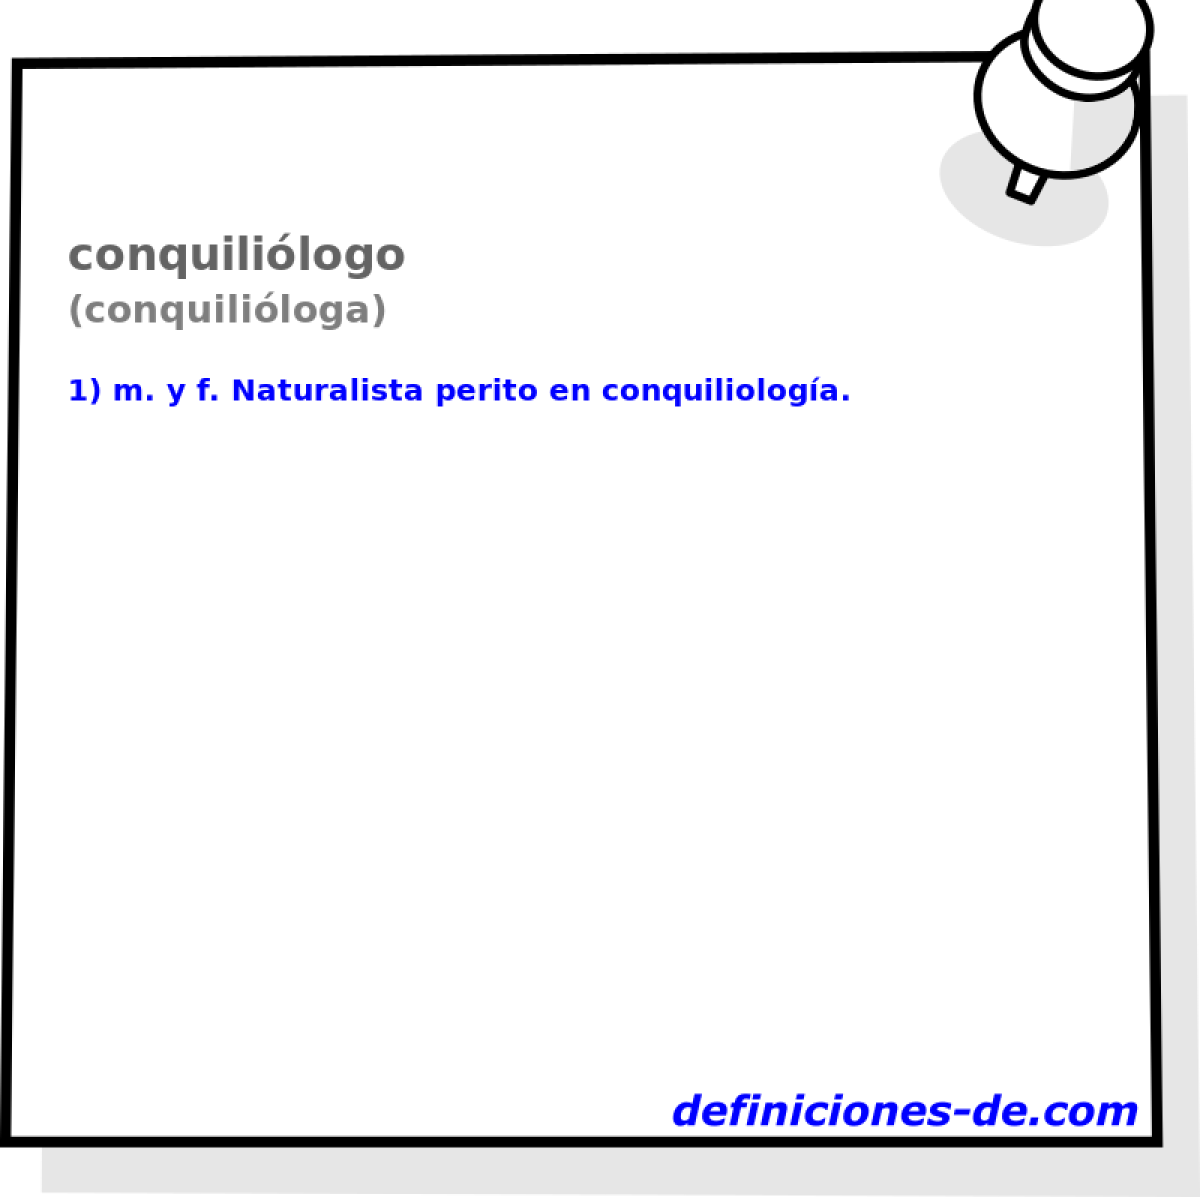 conquililogo (conquililoga)